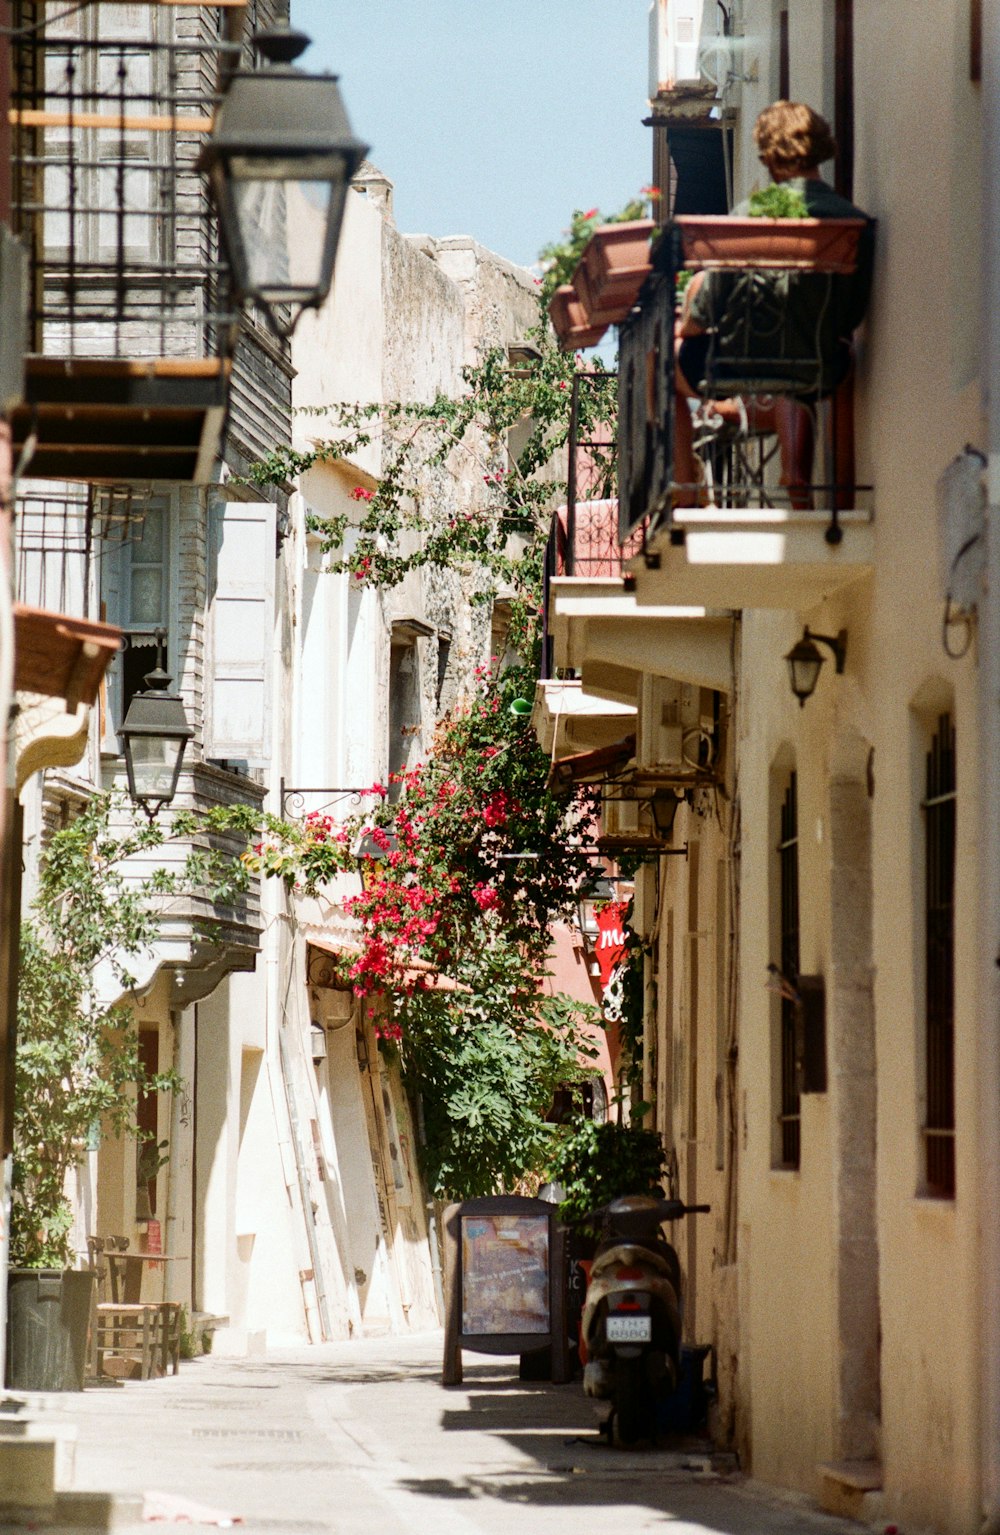 Une rue étroite de la ville avec des fleurs sur les balcons